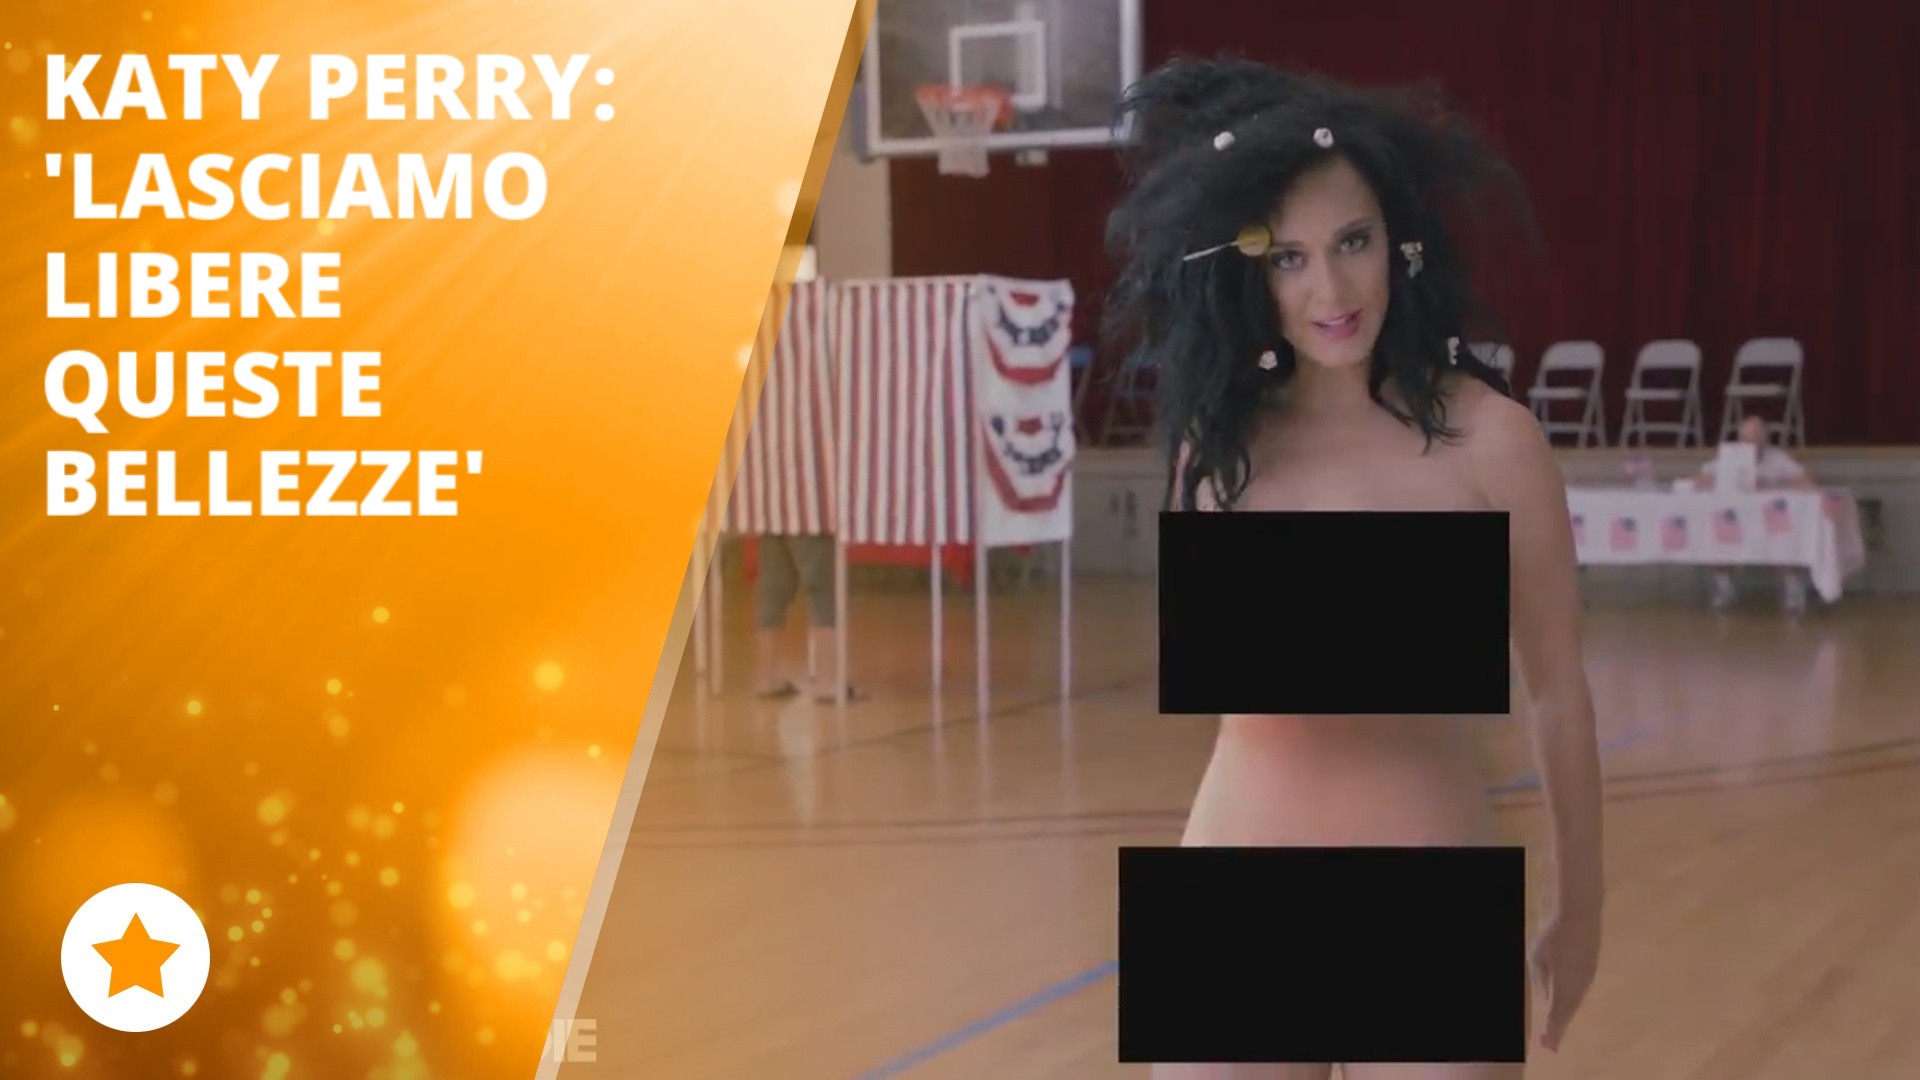 Nuda e simpatica, l'invito al voto di Katy Perry